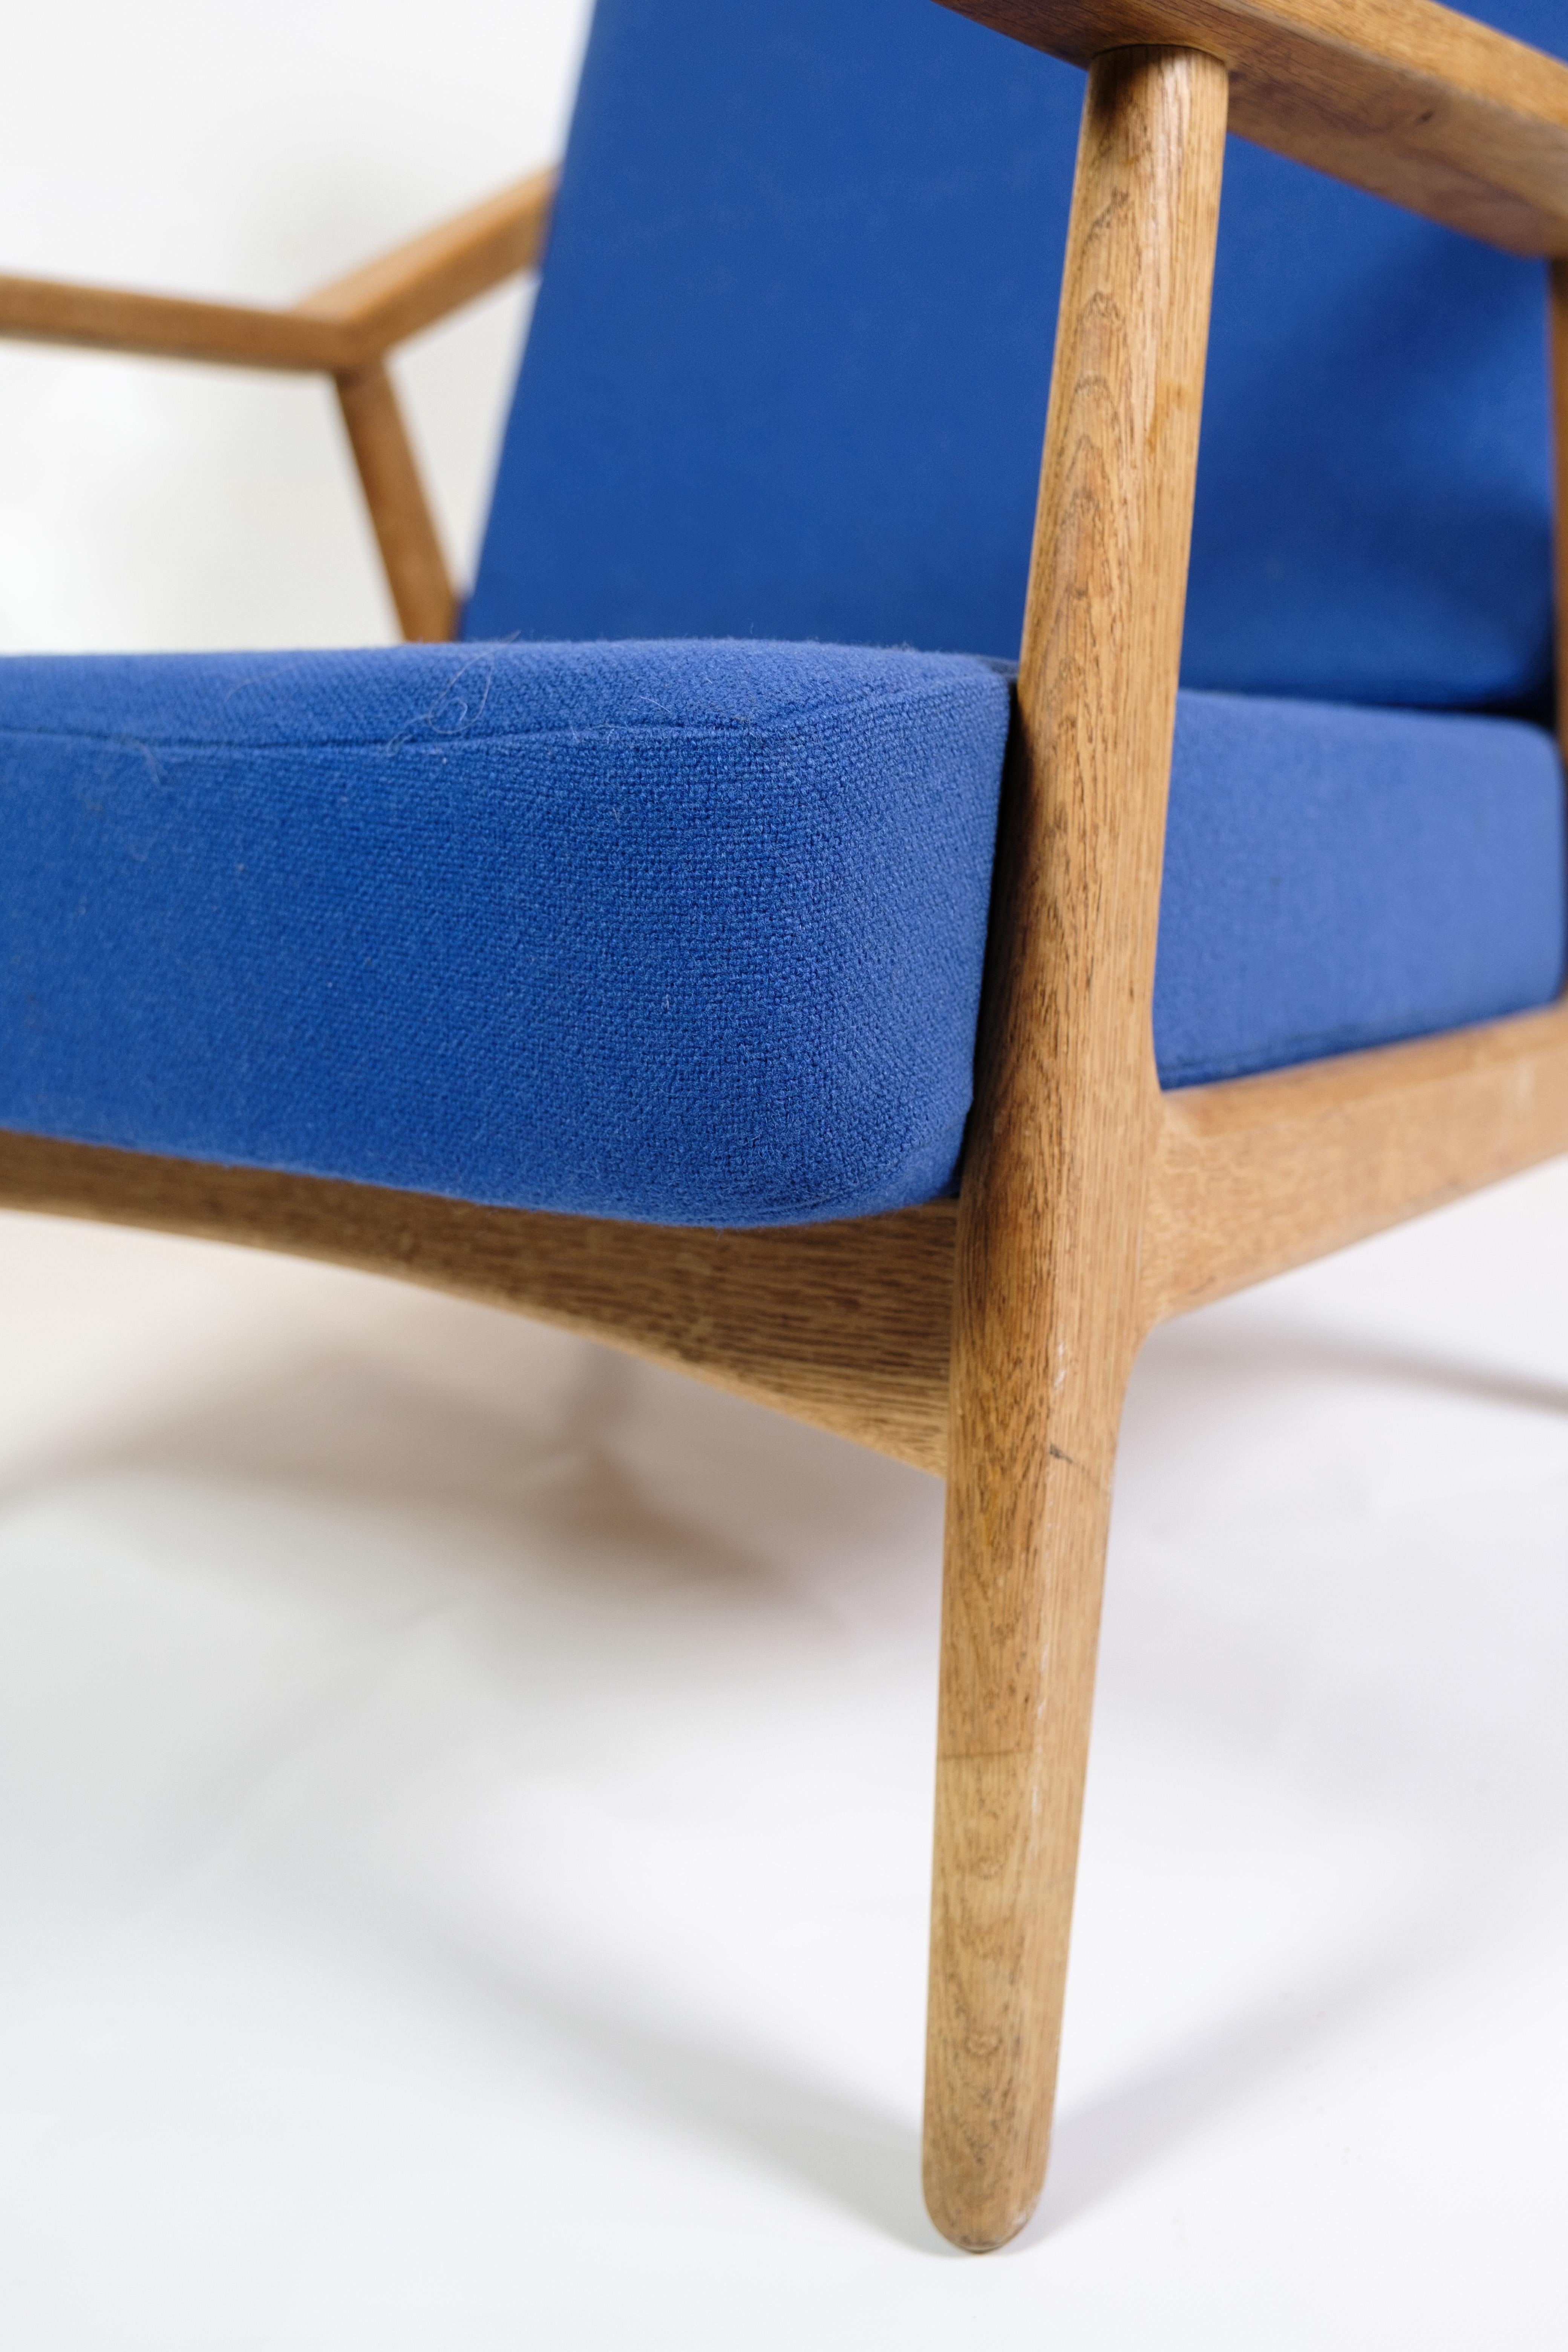 1960er Eichenholzsessel, entworfen von H. Brockmann-Petersen, gepolstert mit blauem Stoff

Dieser Sessel aus Eichenholz, dessen Entwurf H. Brockmann-Petersen zugeschrieben wird und der in den 1960er Jahren entstand, ist ein typisches Möbelstück aus